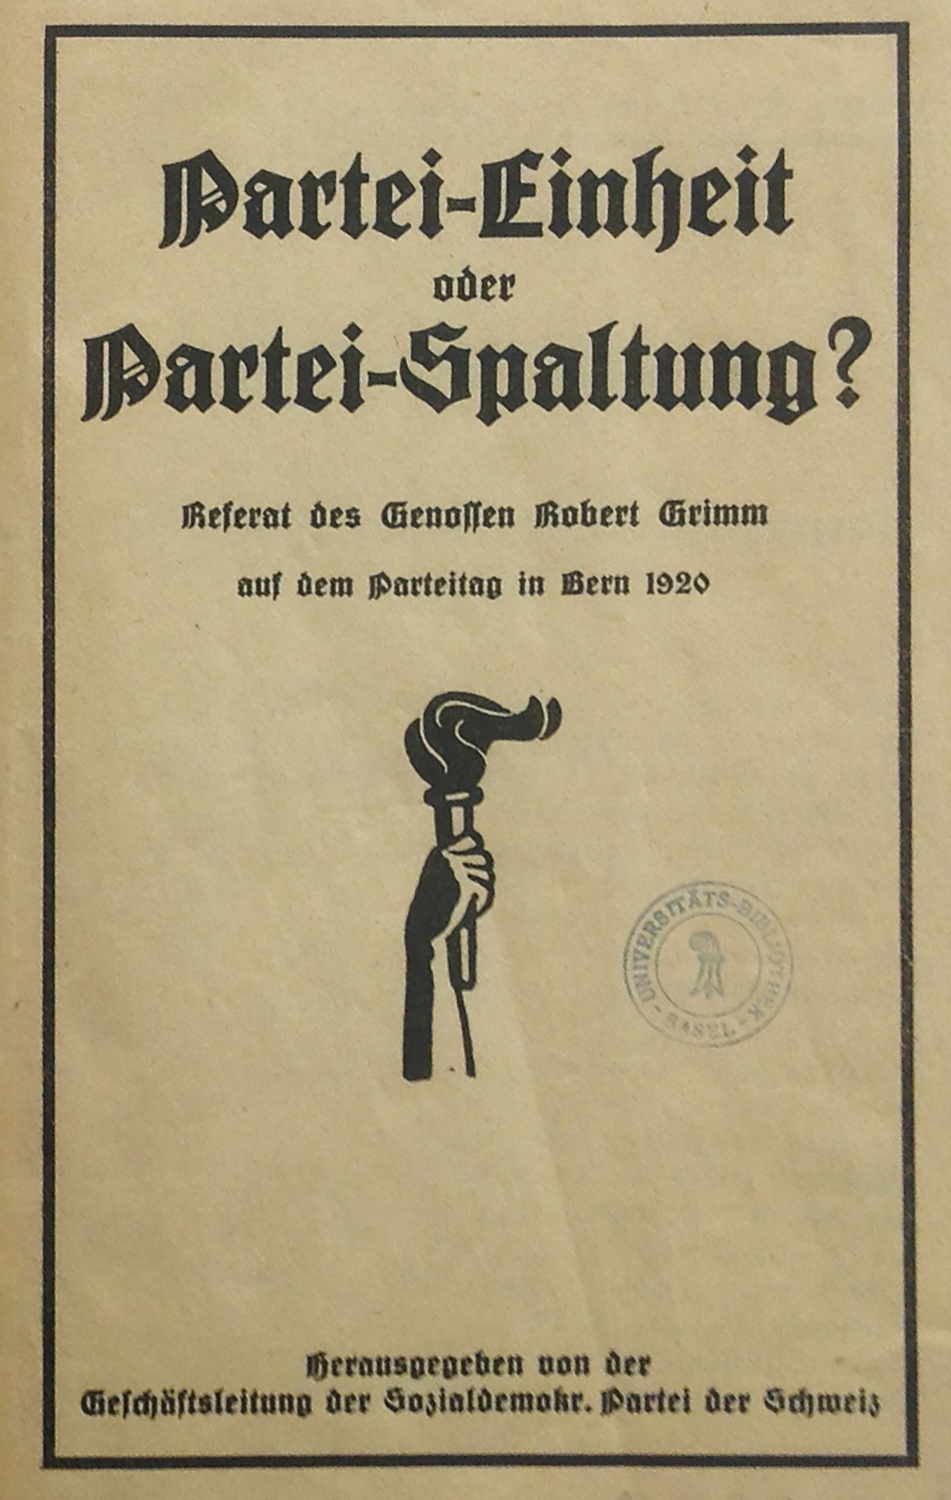 Mit dieser Broschüre griff Robert Grimm in die Auseinandersetzung um den Beitritt der SPS zur Kommunistischen Internationale ein.